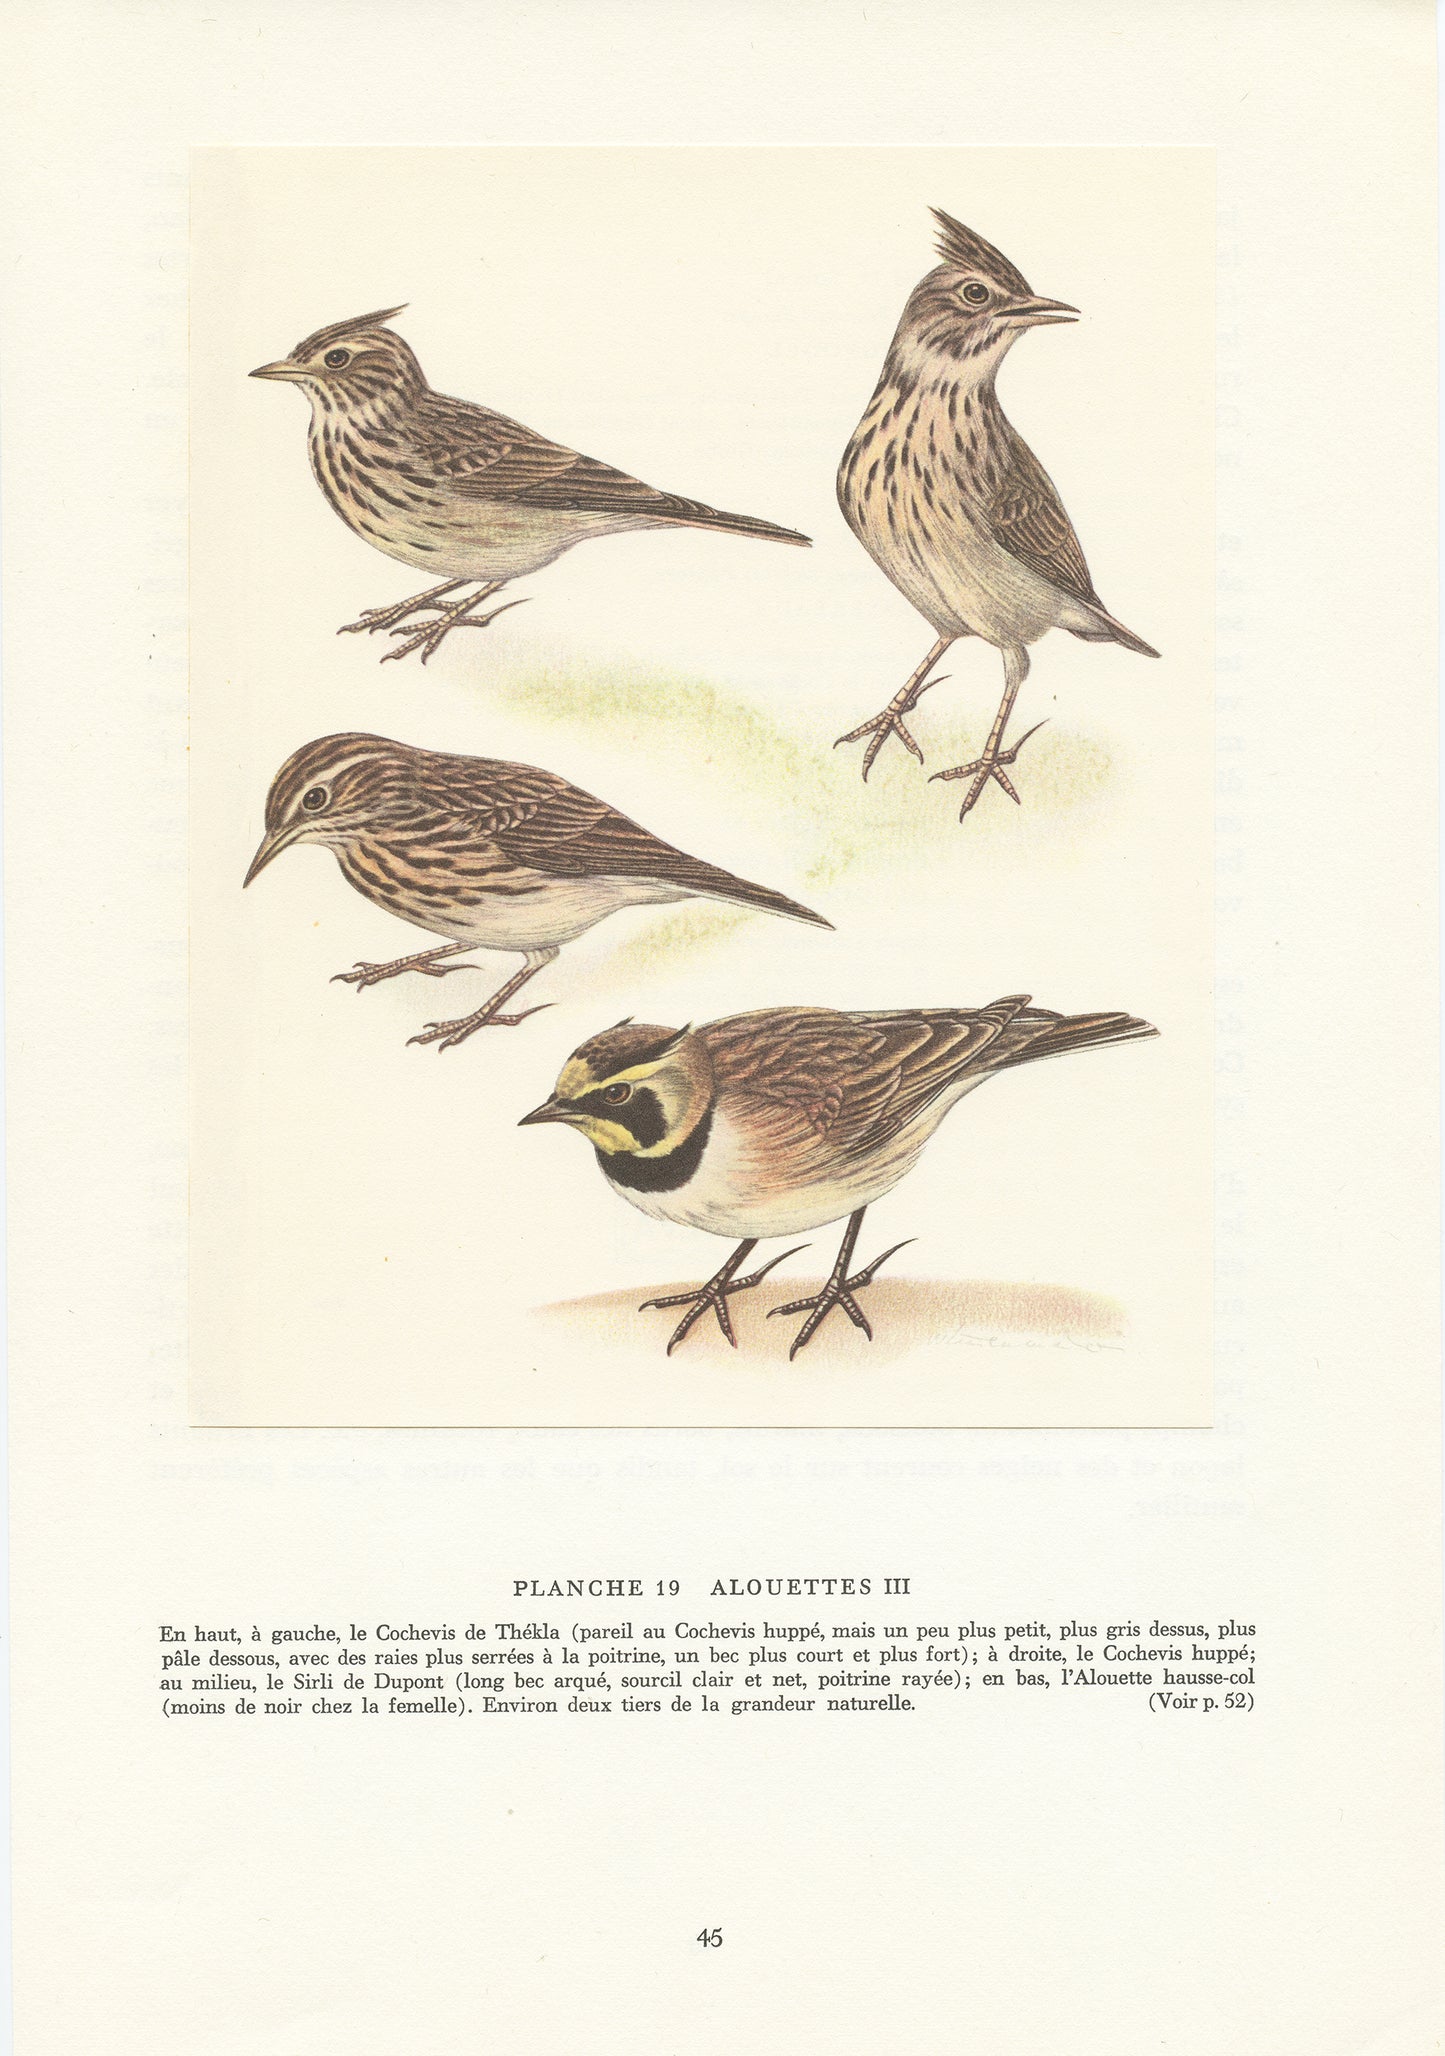 1961 lark birds illustration by Paul Barruel